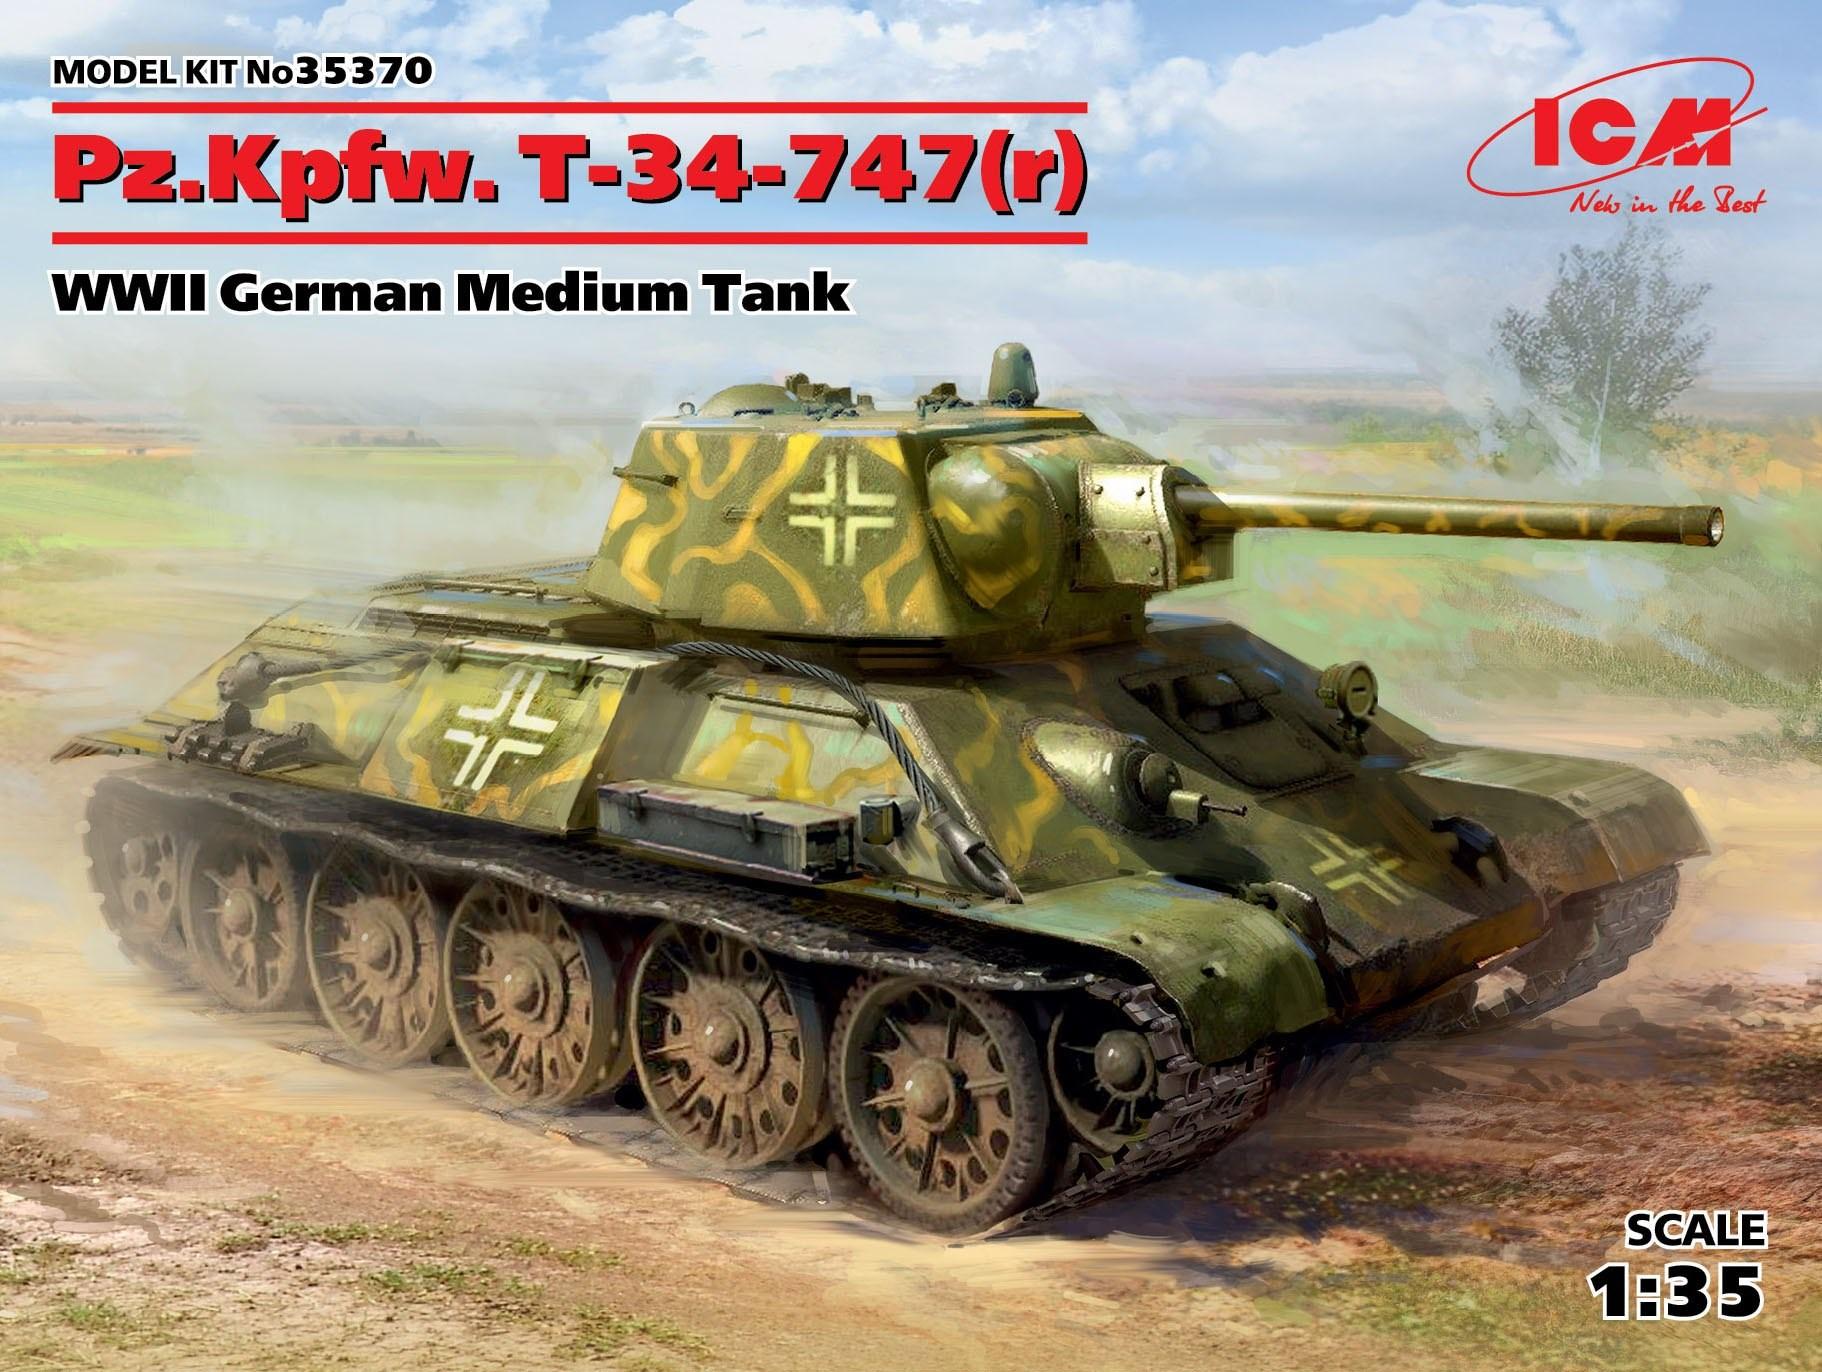 1/35 Pz.Kpfw. T-34-747(r)  WWII German Medium Tank